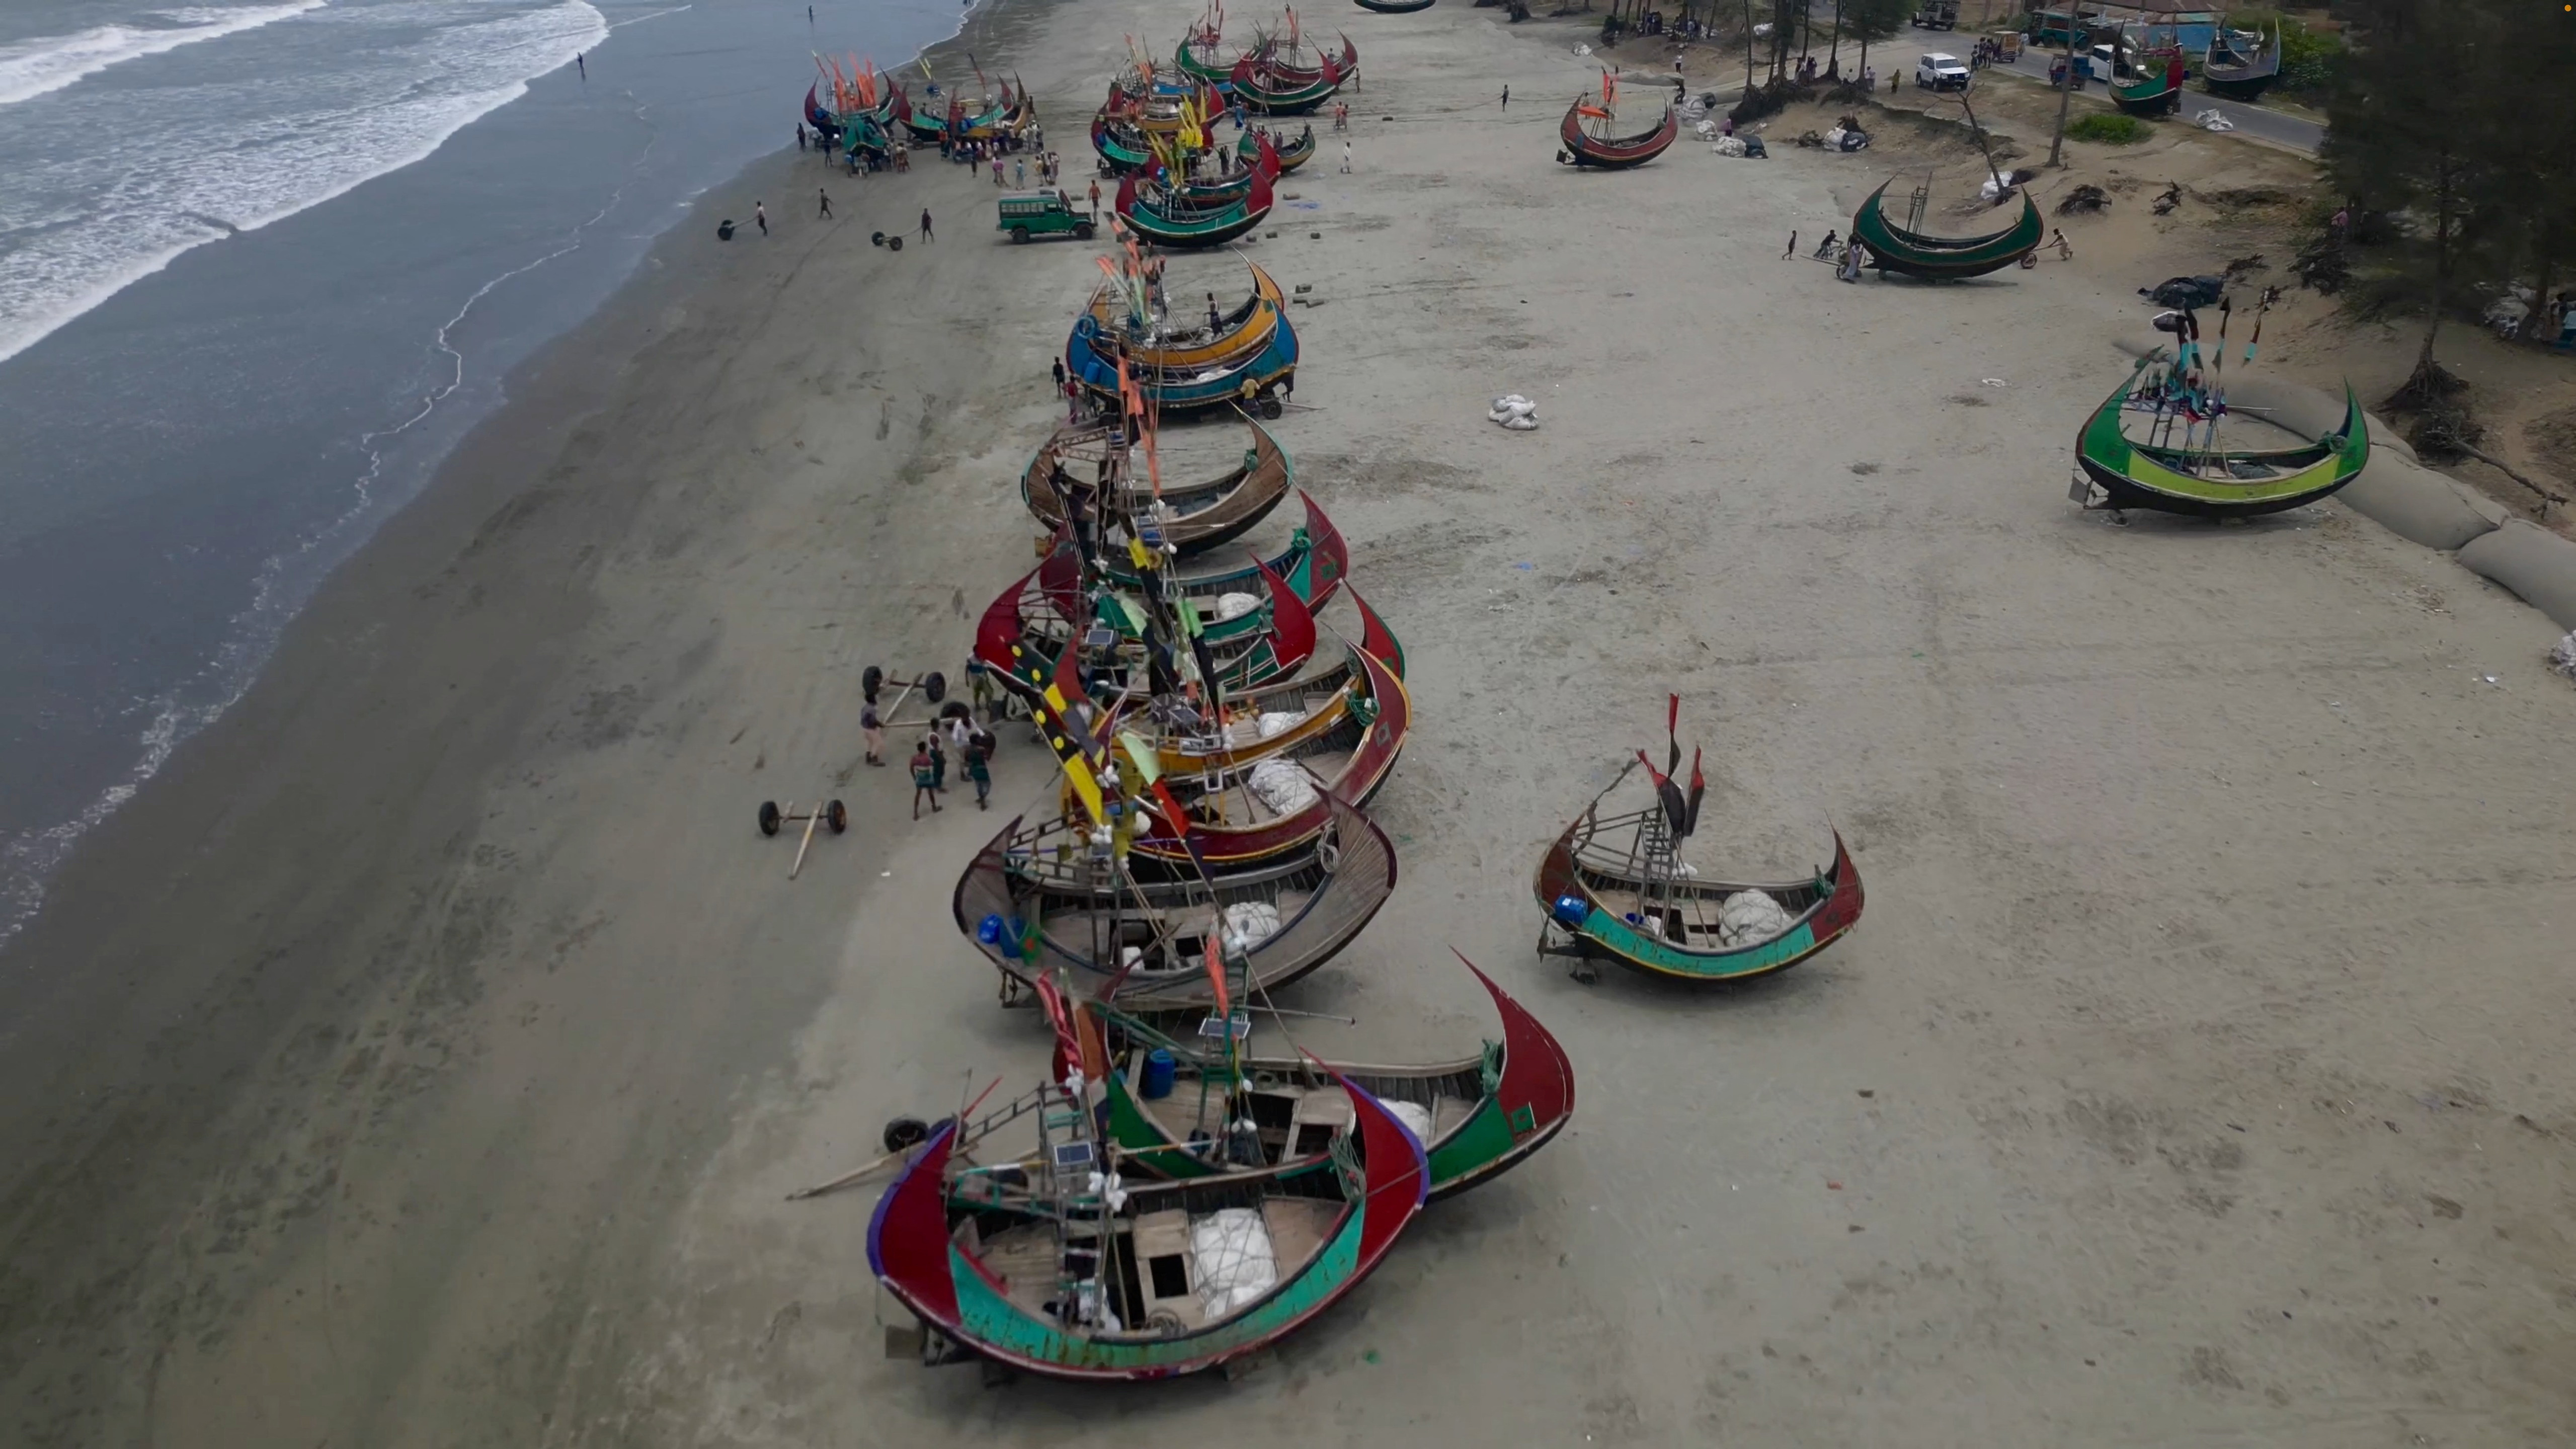 Ο κυκλώνας Μόκα σάρωσε το λιμάνι της Μιανμάρ, παρακάμπτοντας μεγάλους προσφυγικούς καταυλισμούς